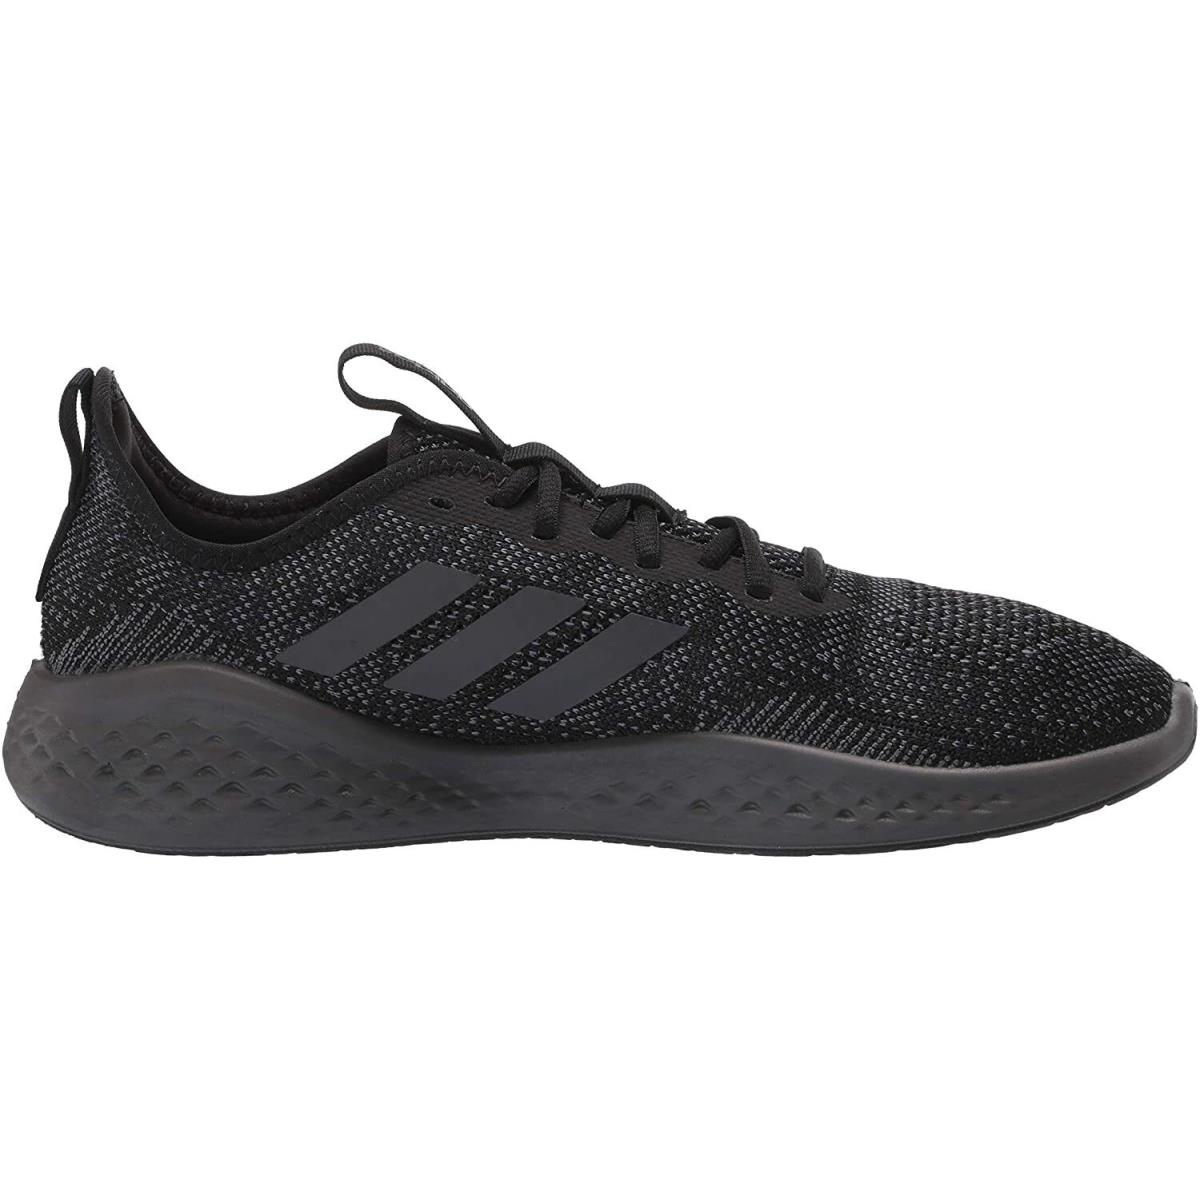 Adidas shoes FLUIDFLOW - Black 2